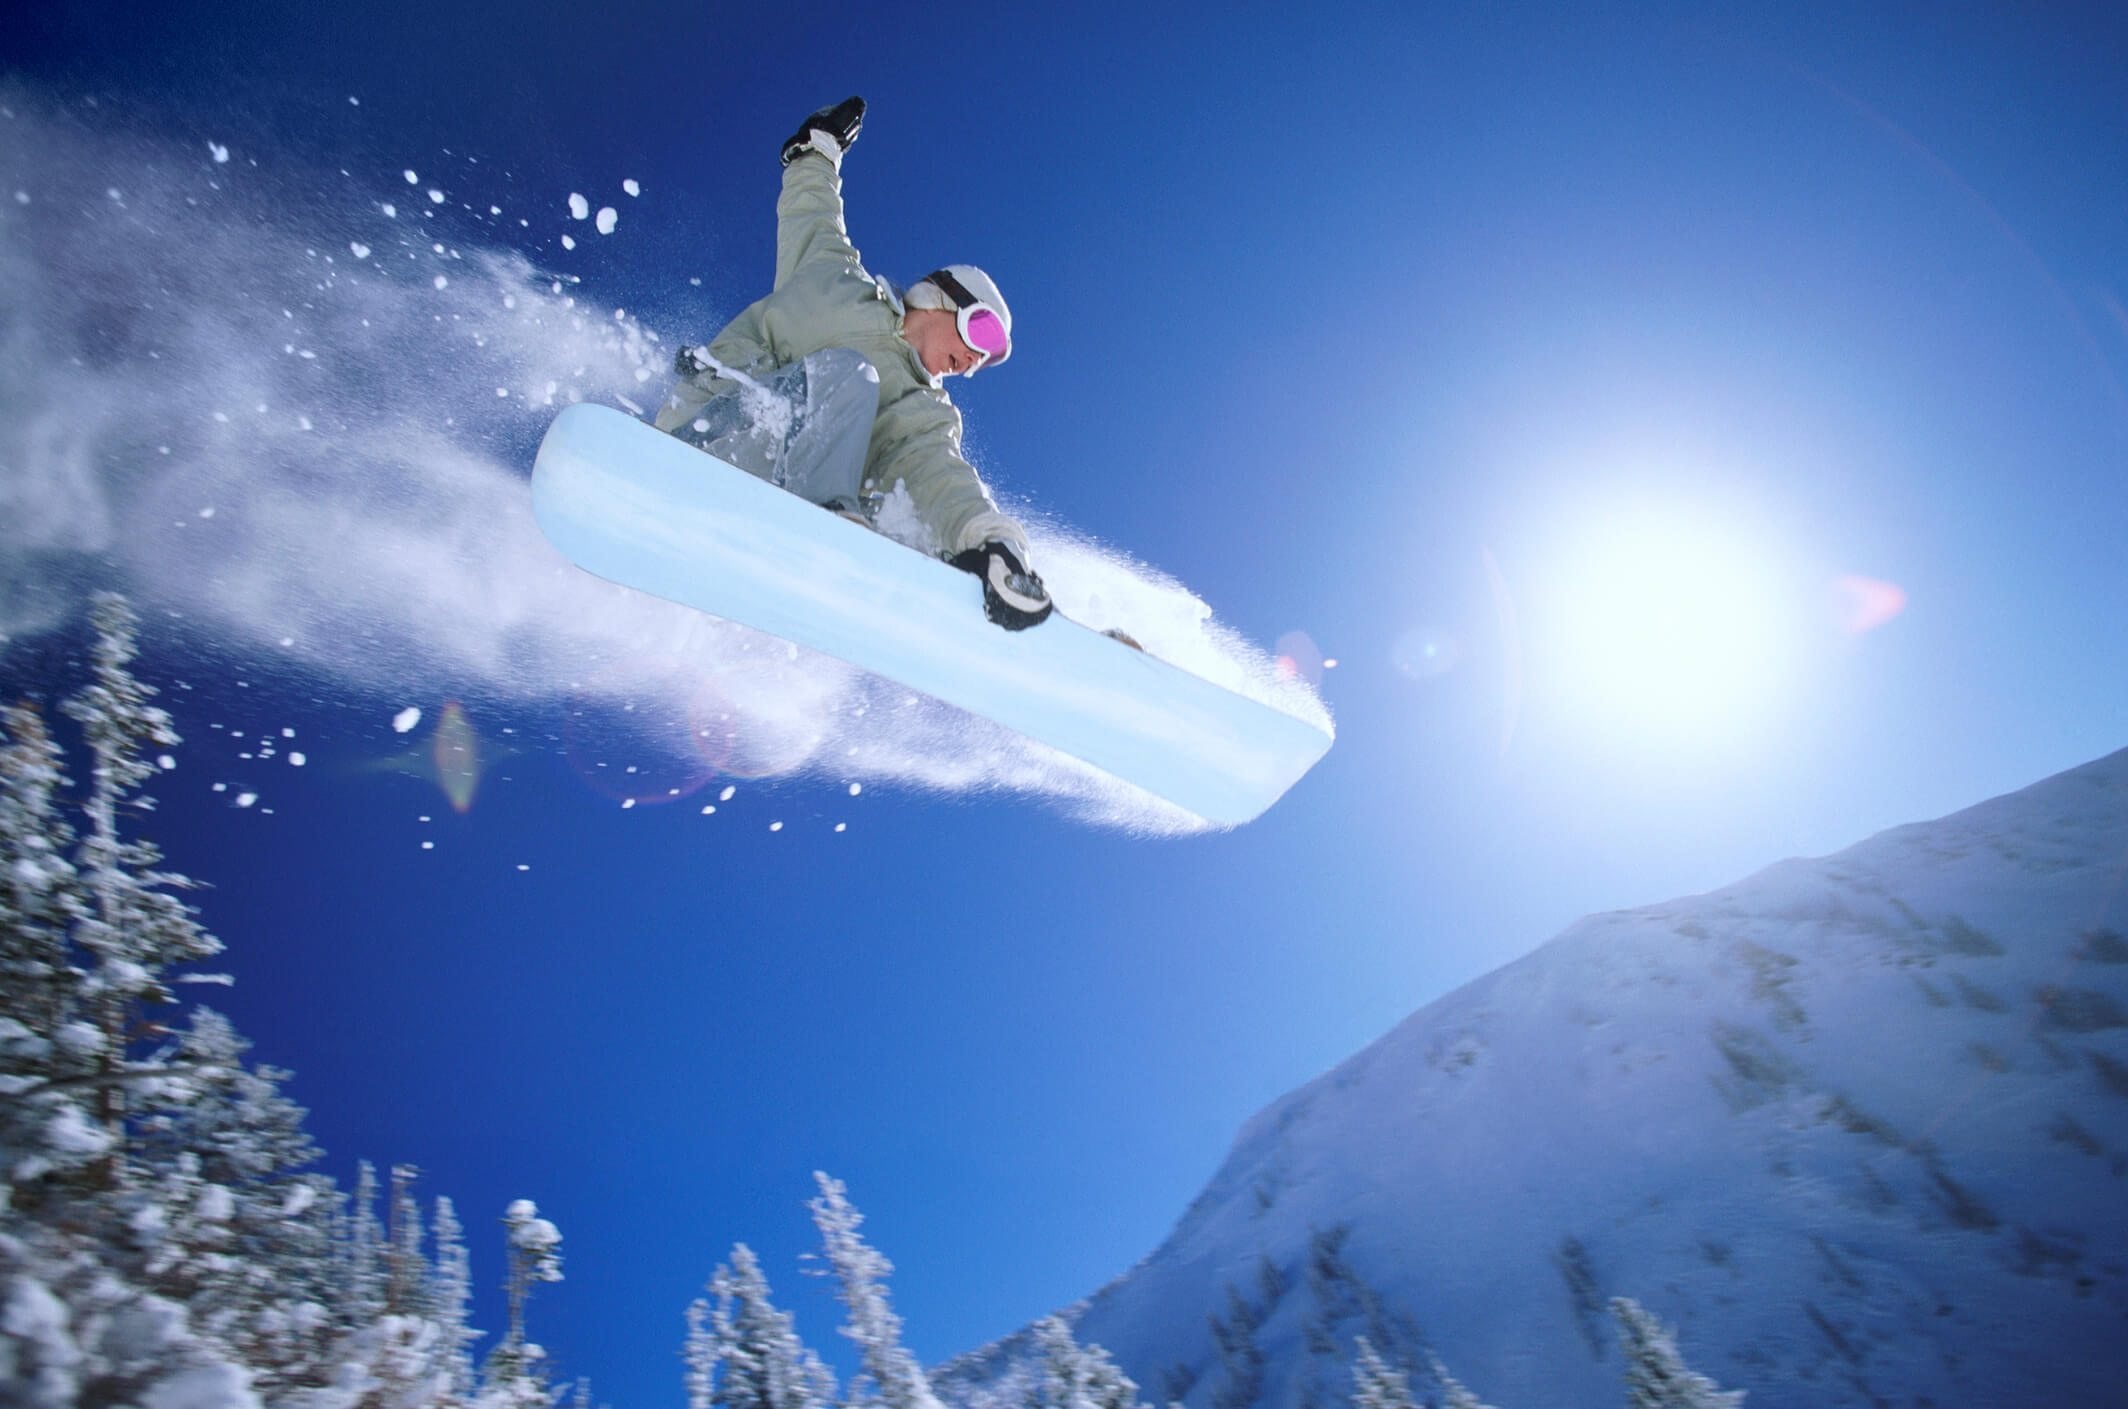 Snowboarder, midair.